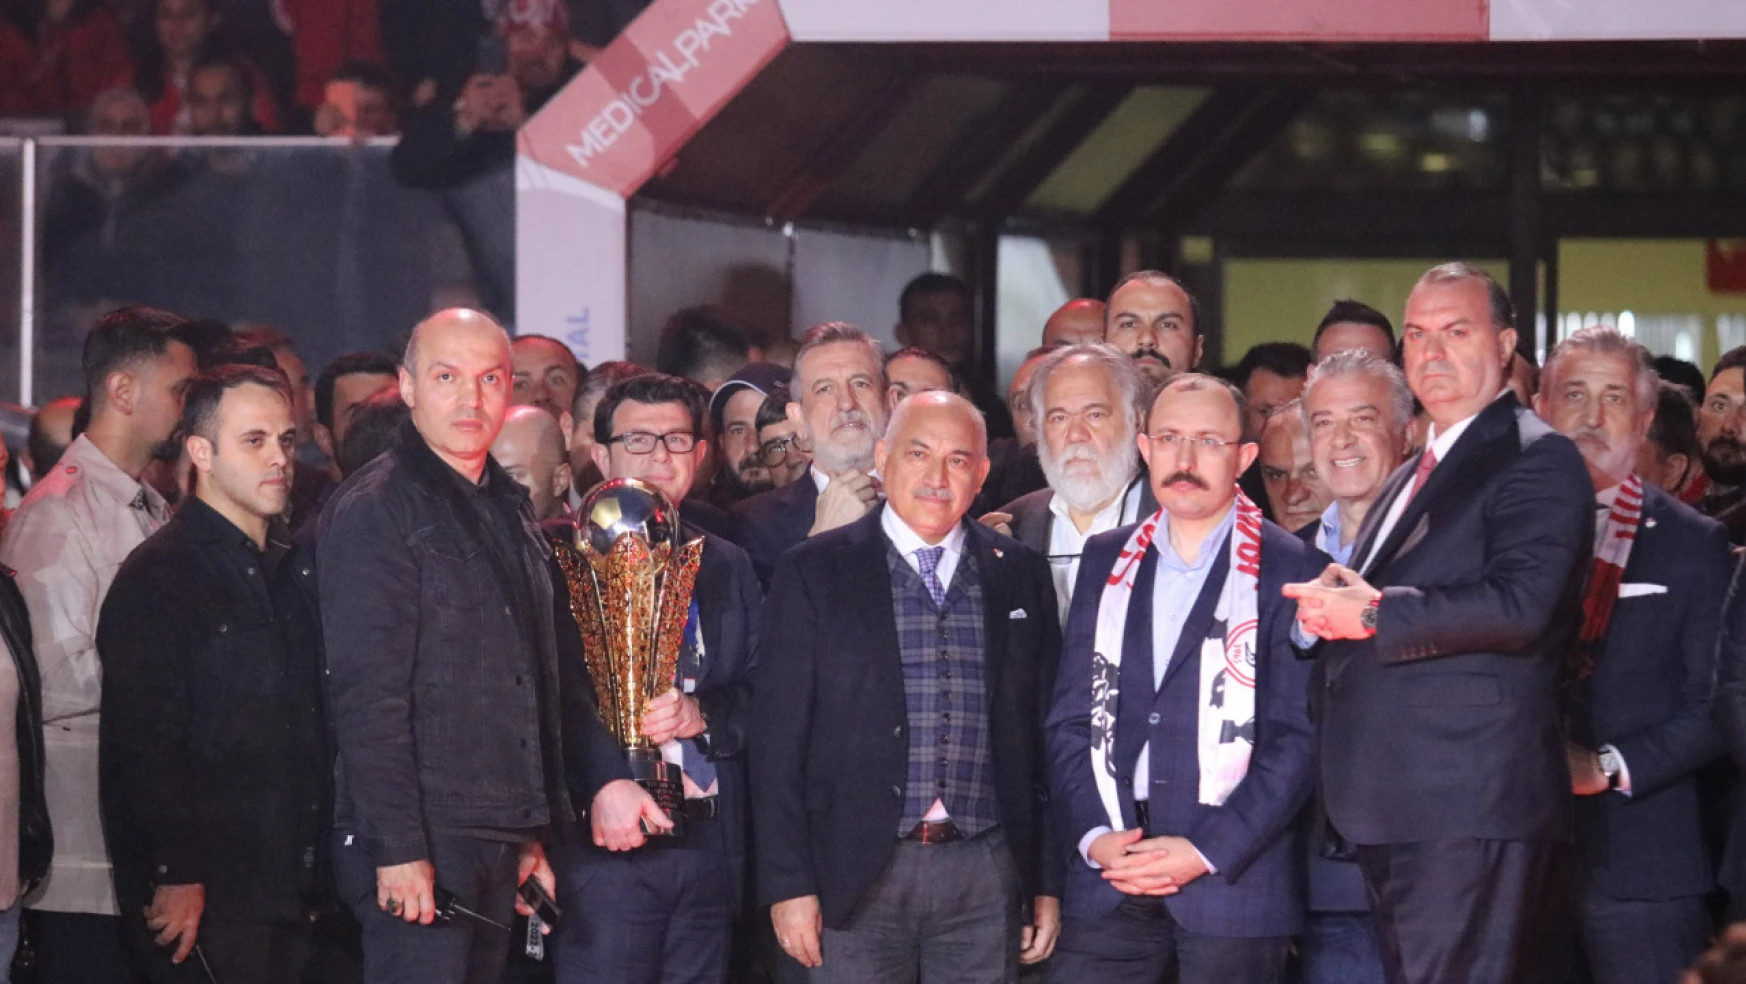 TFF Başkanı Büyükekşi'ye Samsun'da soğuk duş: Yuhalandı